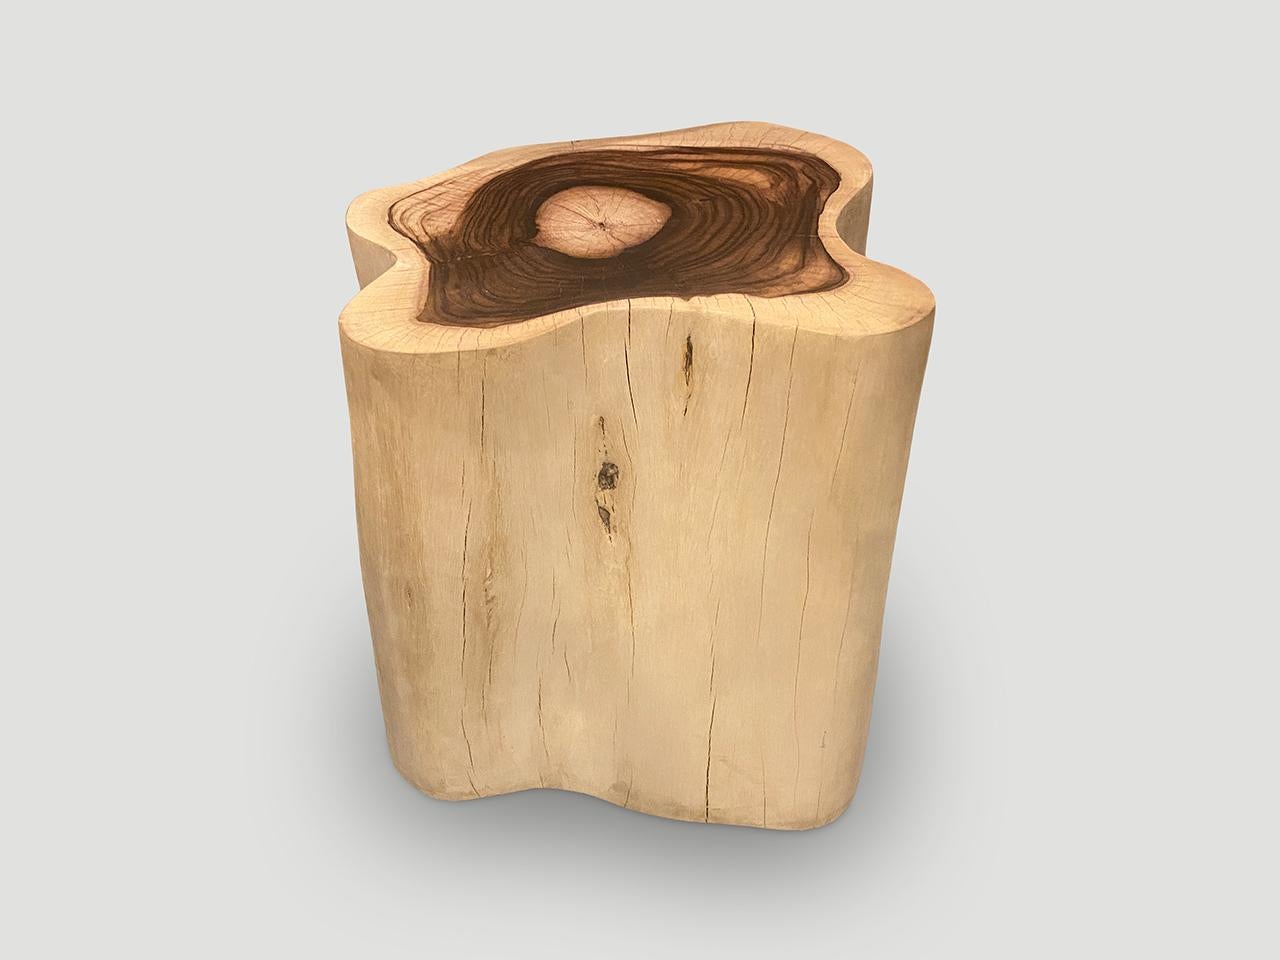 Skulpturaler Beistelltisch oder Sockel in Übergröße. Ein sehr seltenes Holz, das auch als Palisanderholz bekannt ist. Wir haben die Seiten gebleicht und die Innenseite in den schönen kontrastreichen Dunkelbrauntönen belassen. Wir haben ein Paar. Die